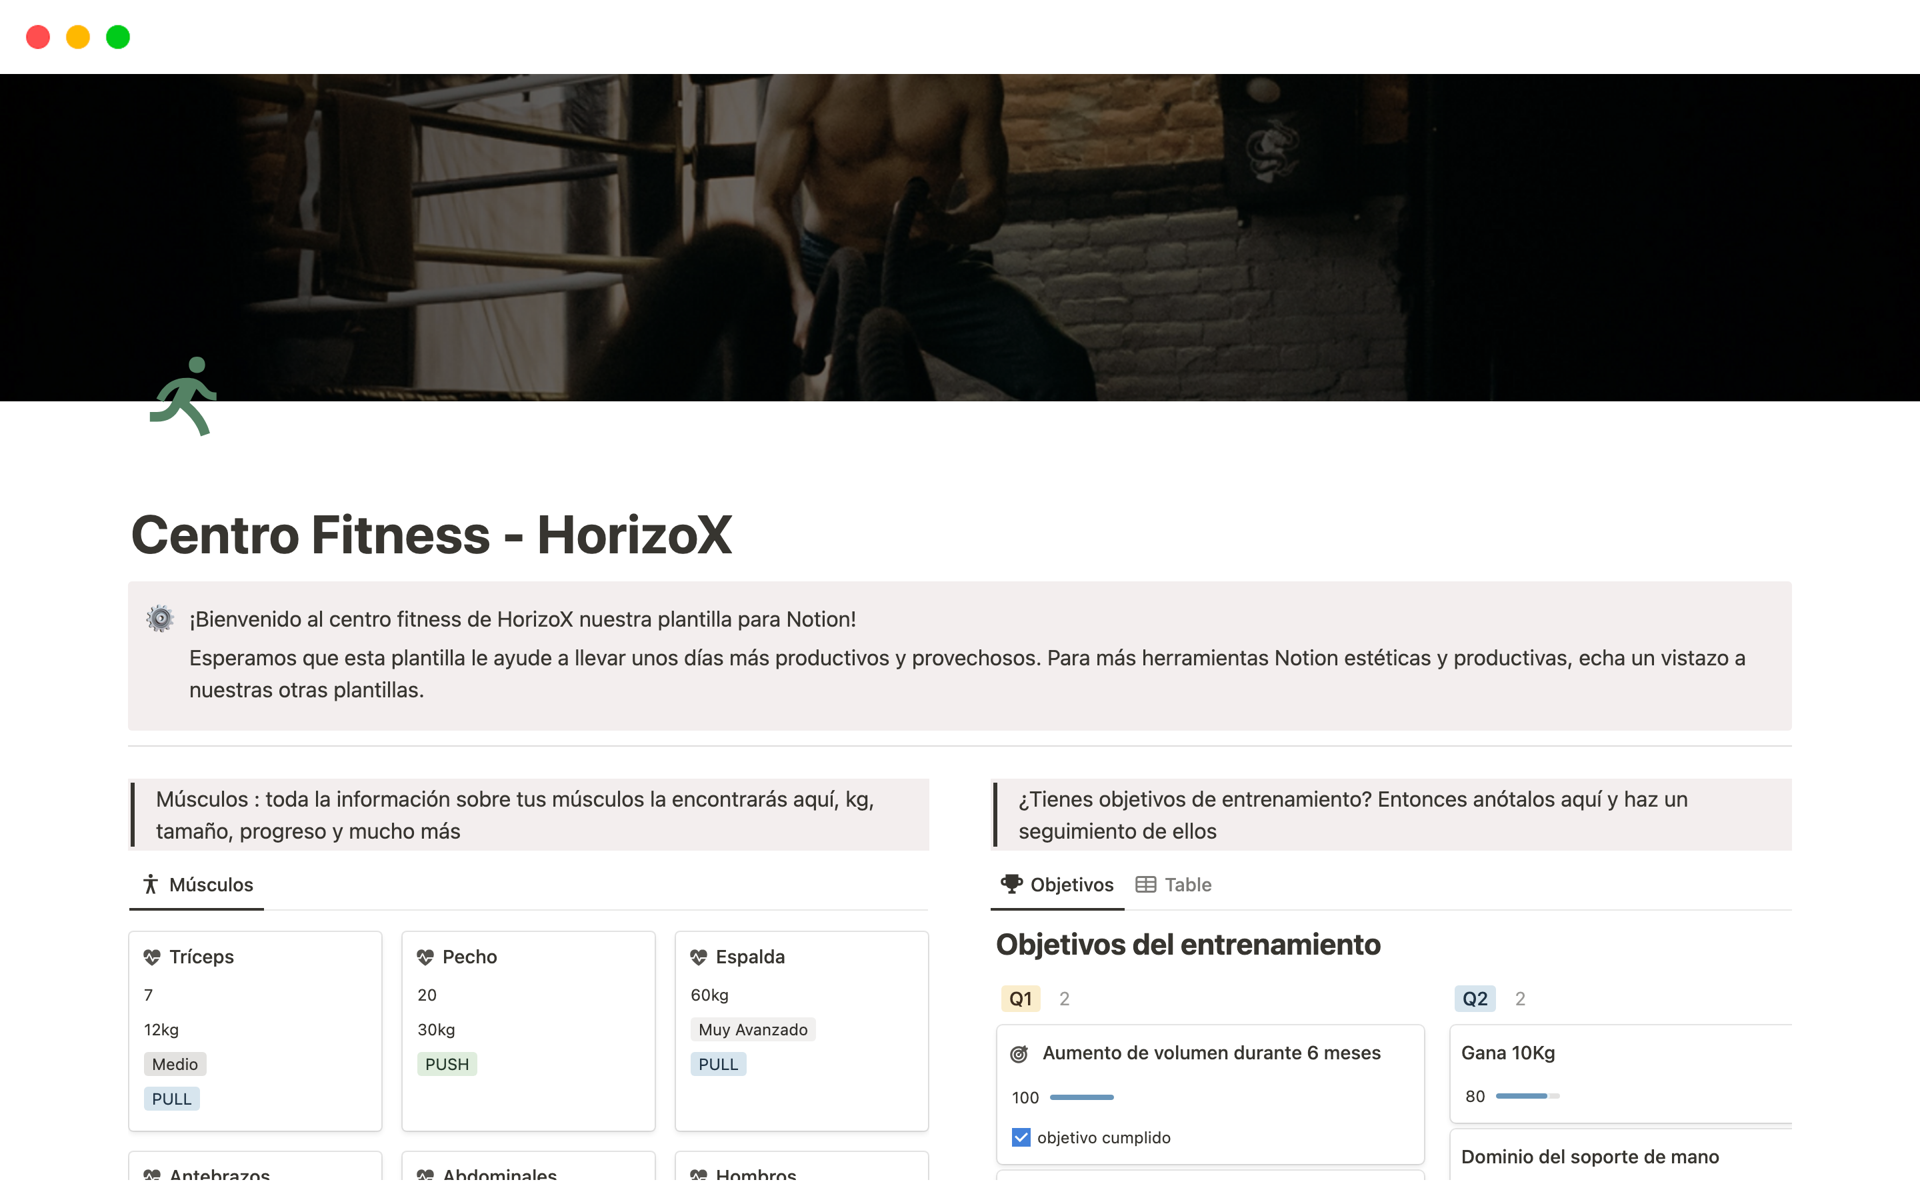 Eine Vorlagenvorschau für Rutinas Y ejercicios Centro Fitness - HorizoX  